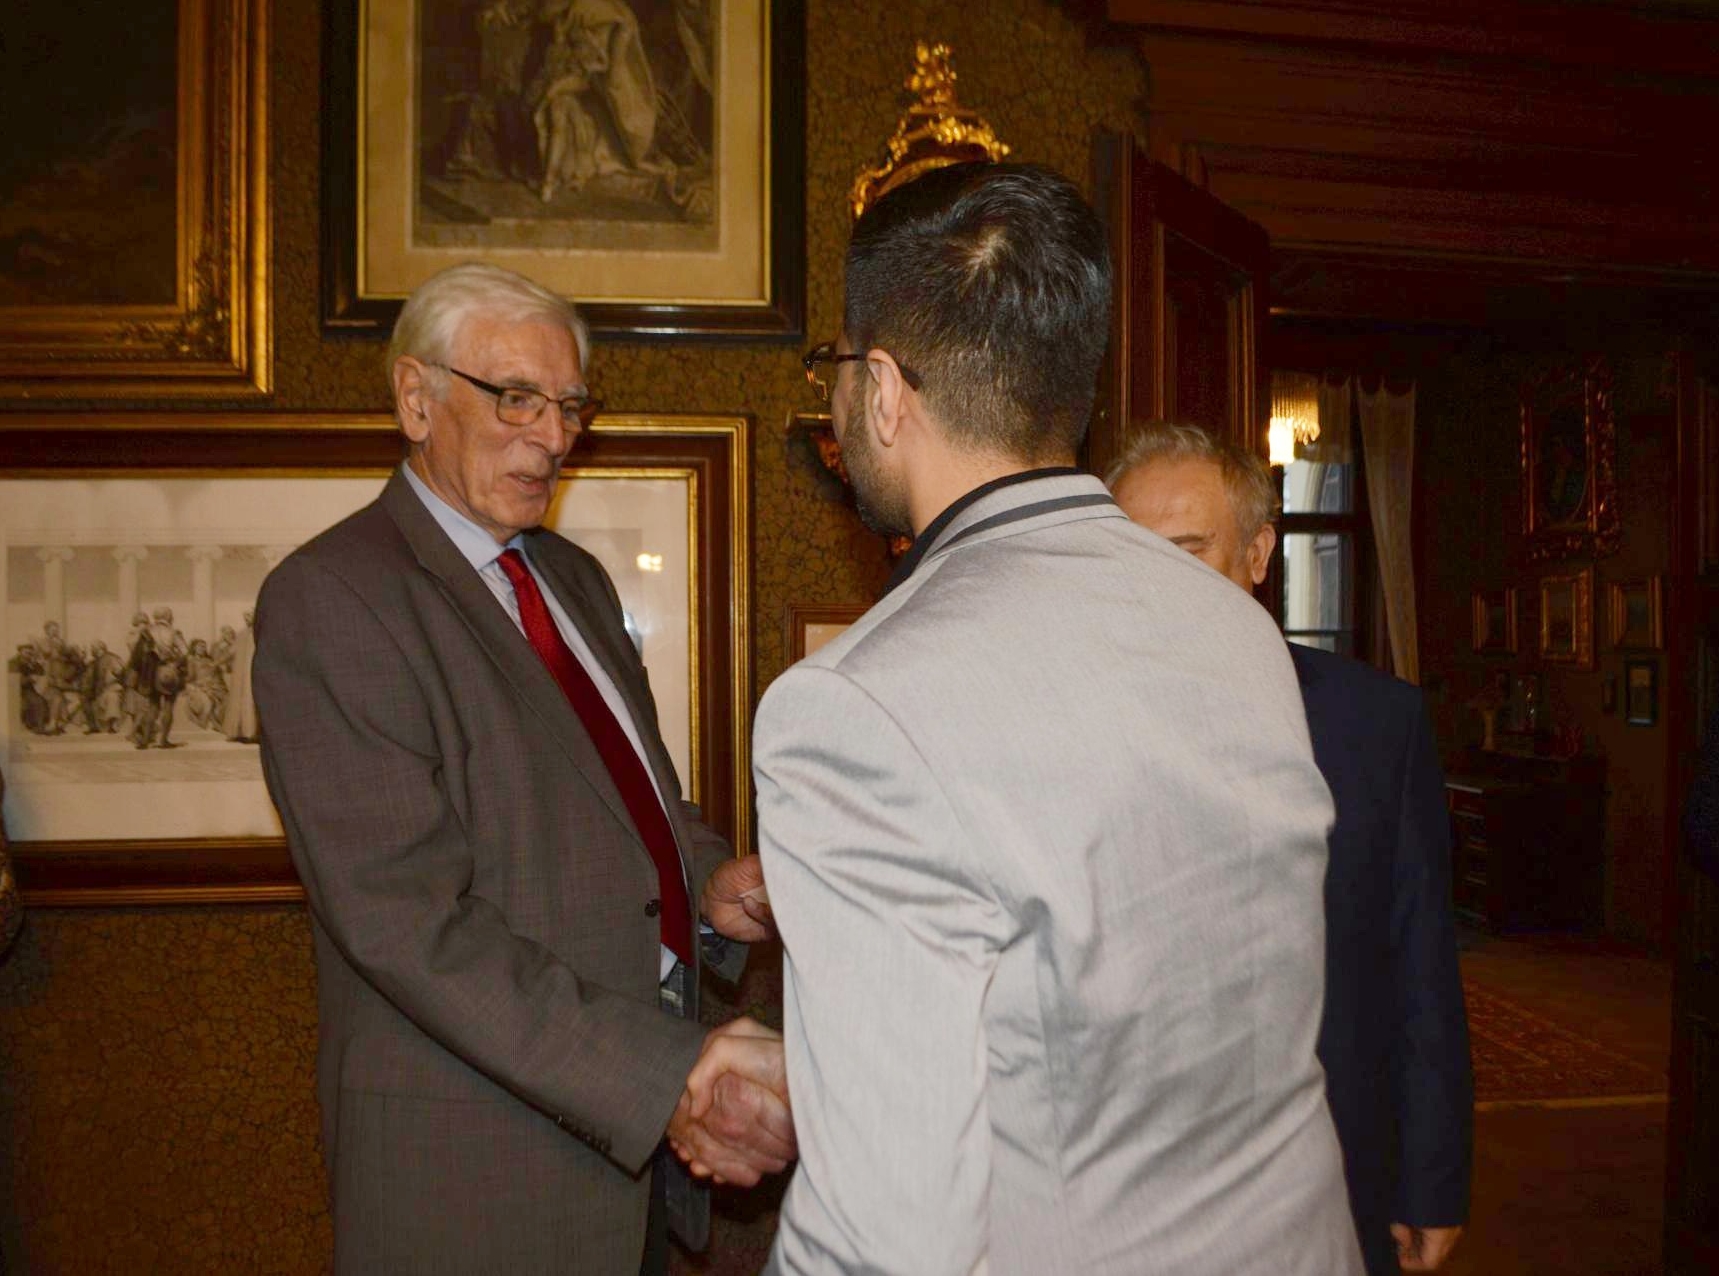 Dr. Pamir Halimzai received the Josef Hlávka award